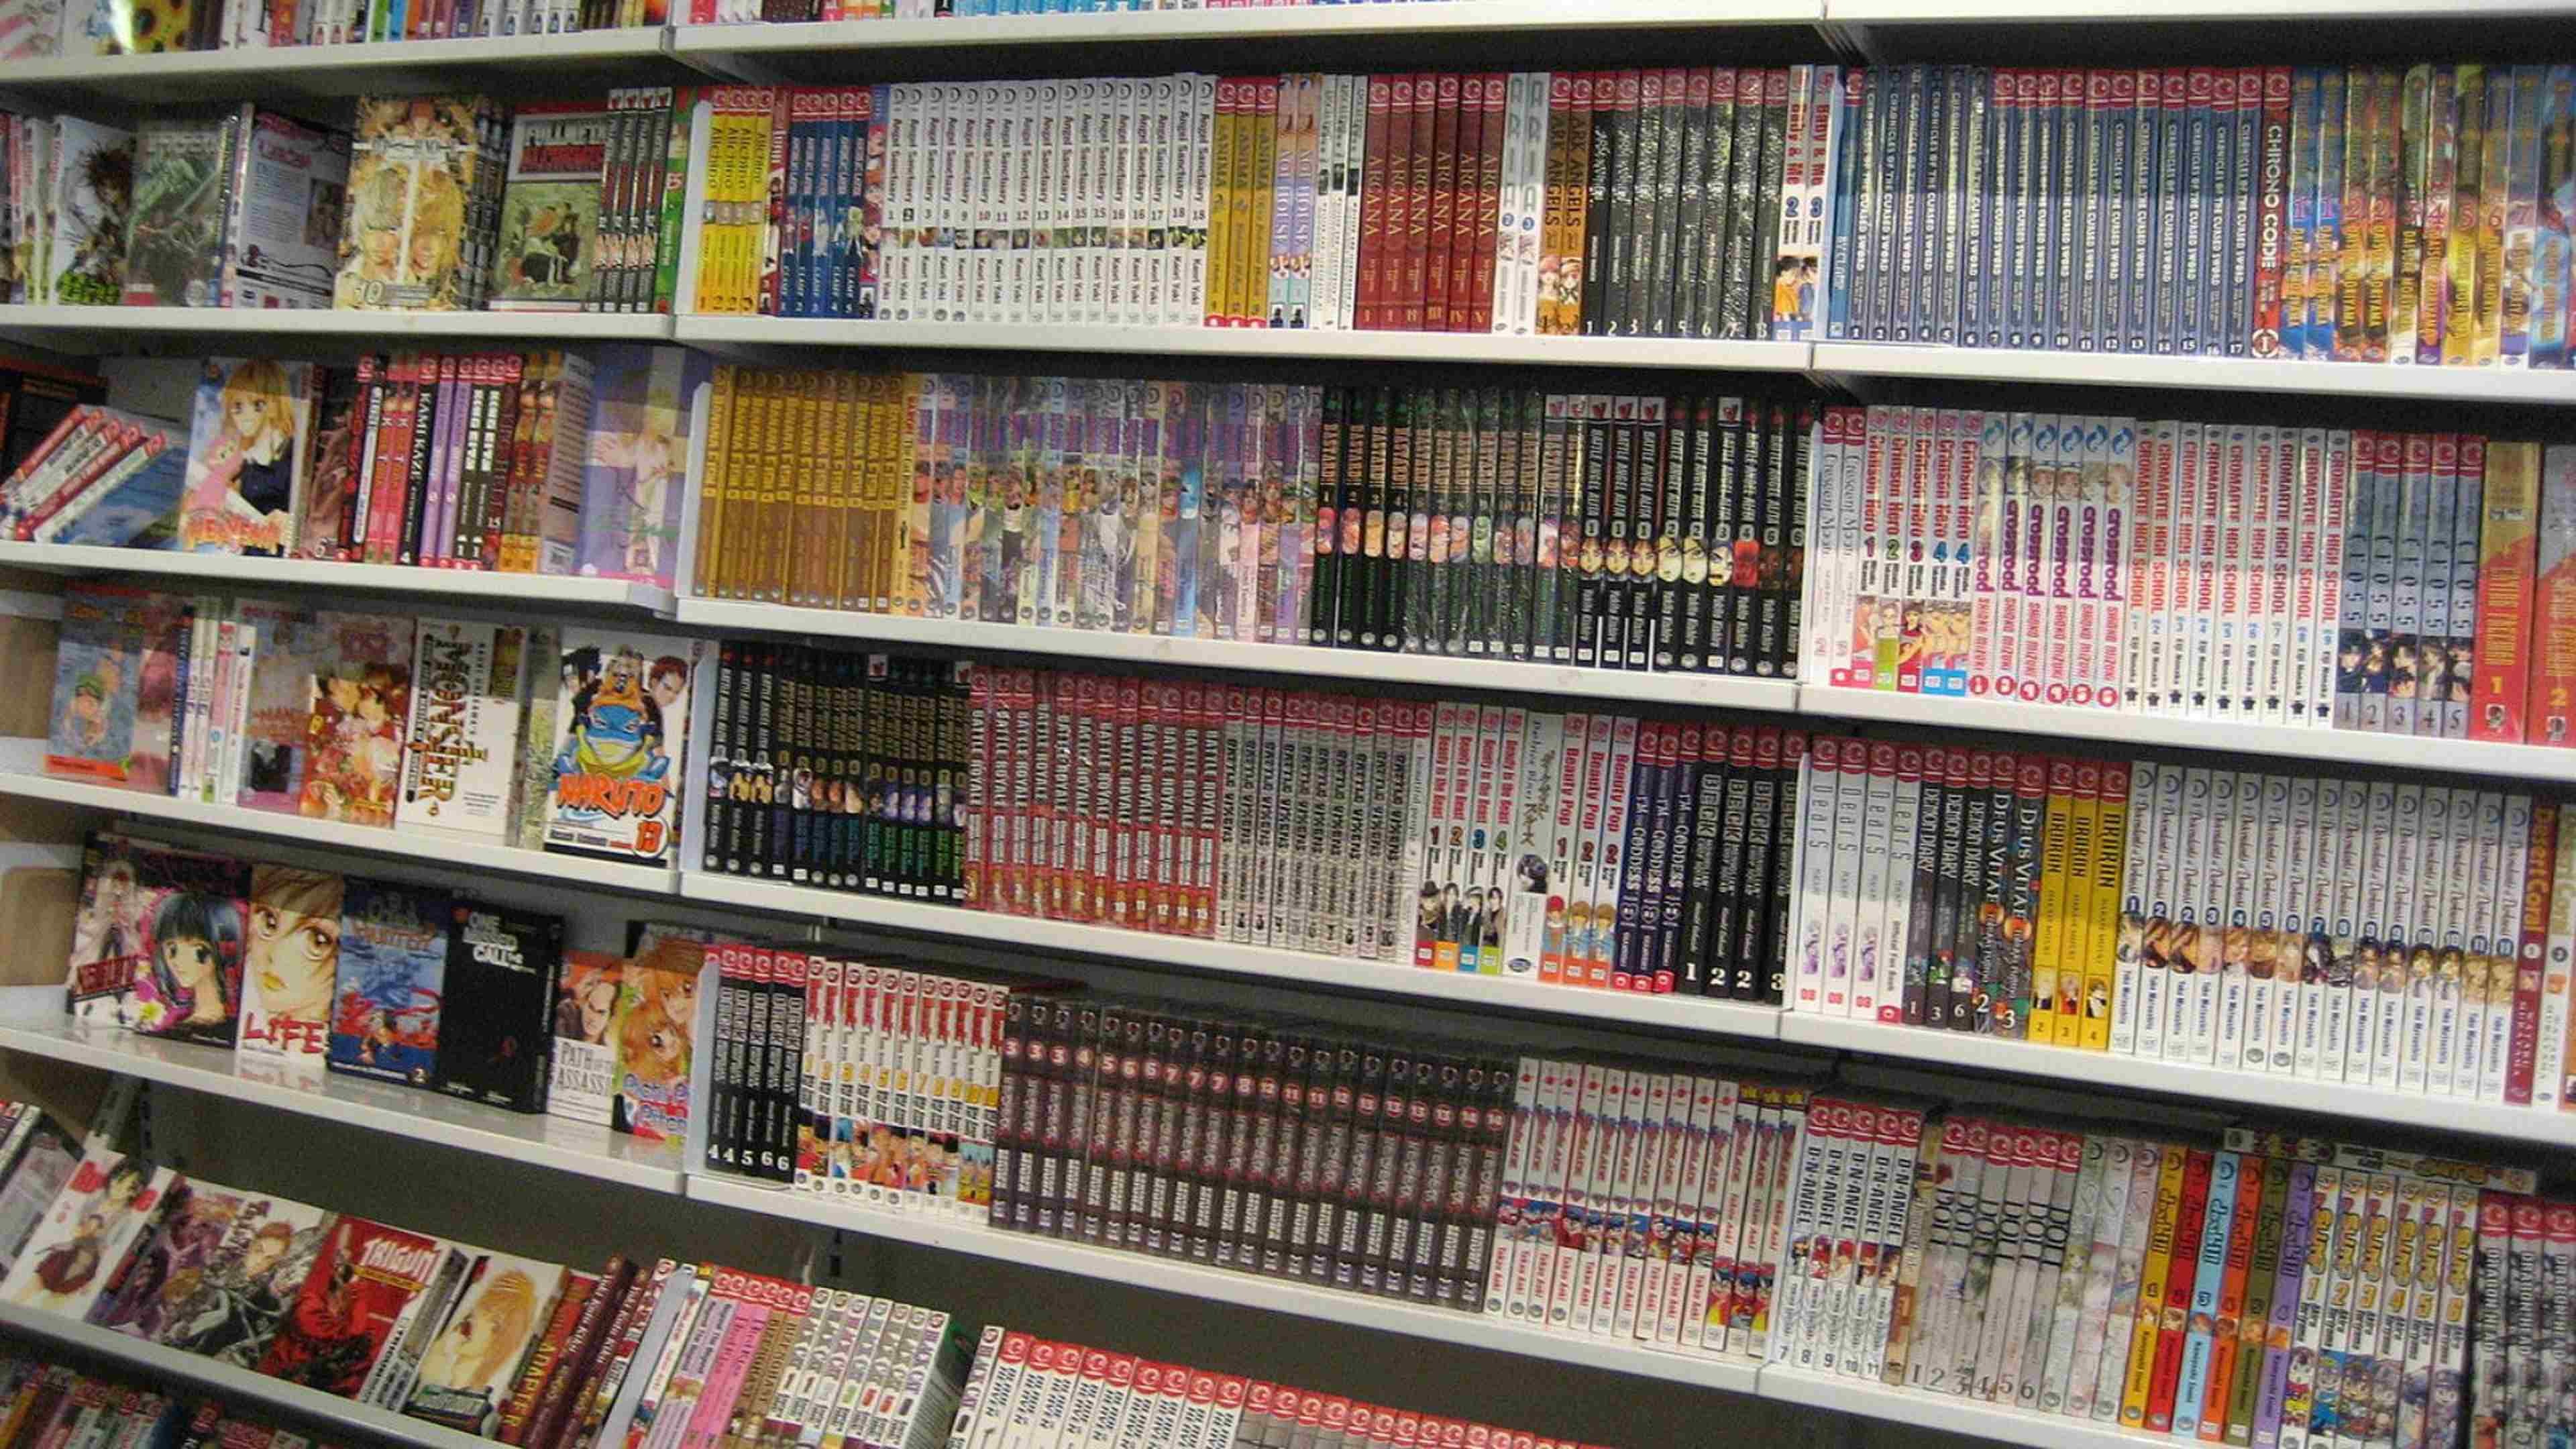 Vous semblez mépriser les mangas, mais ne font-ils pas pourtant partie de la culture populaire japonaise ?